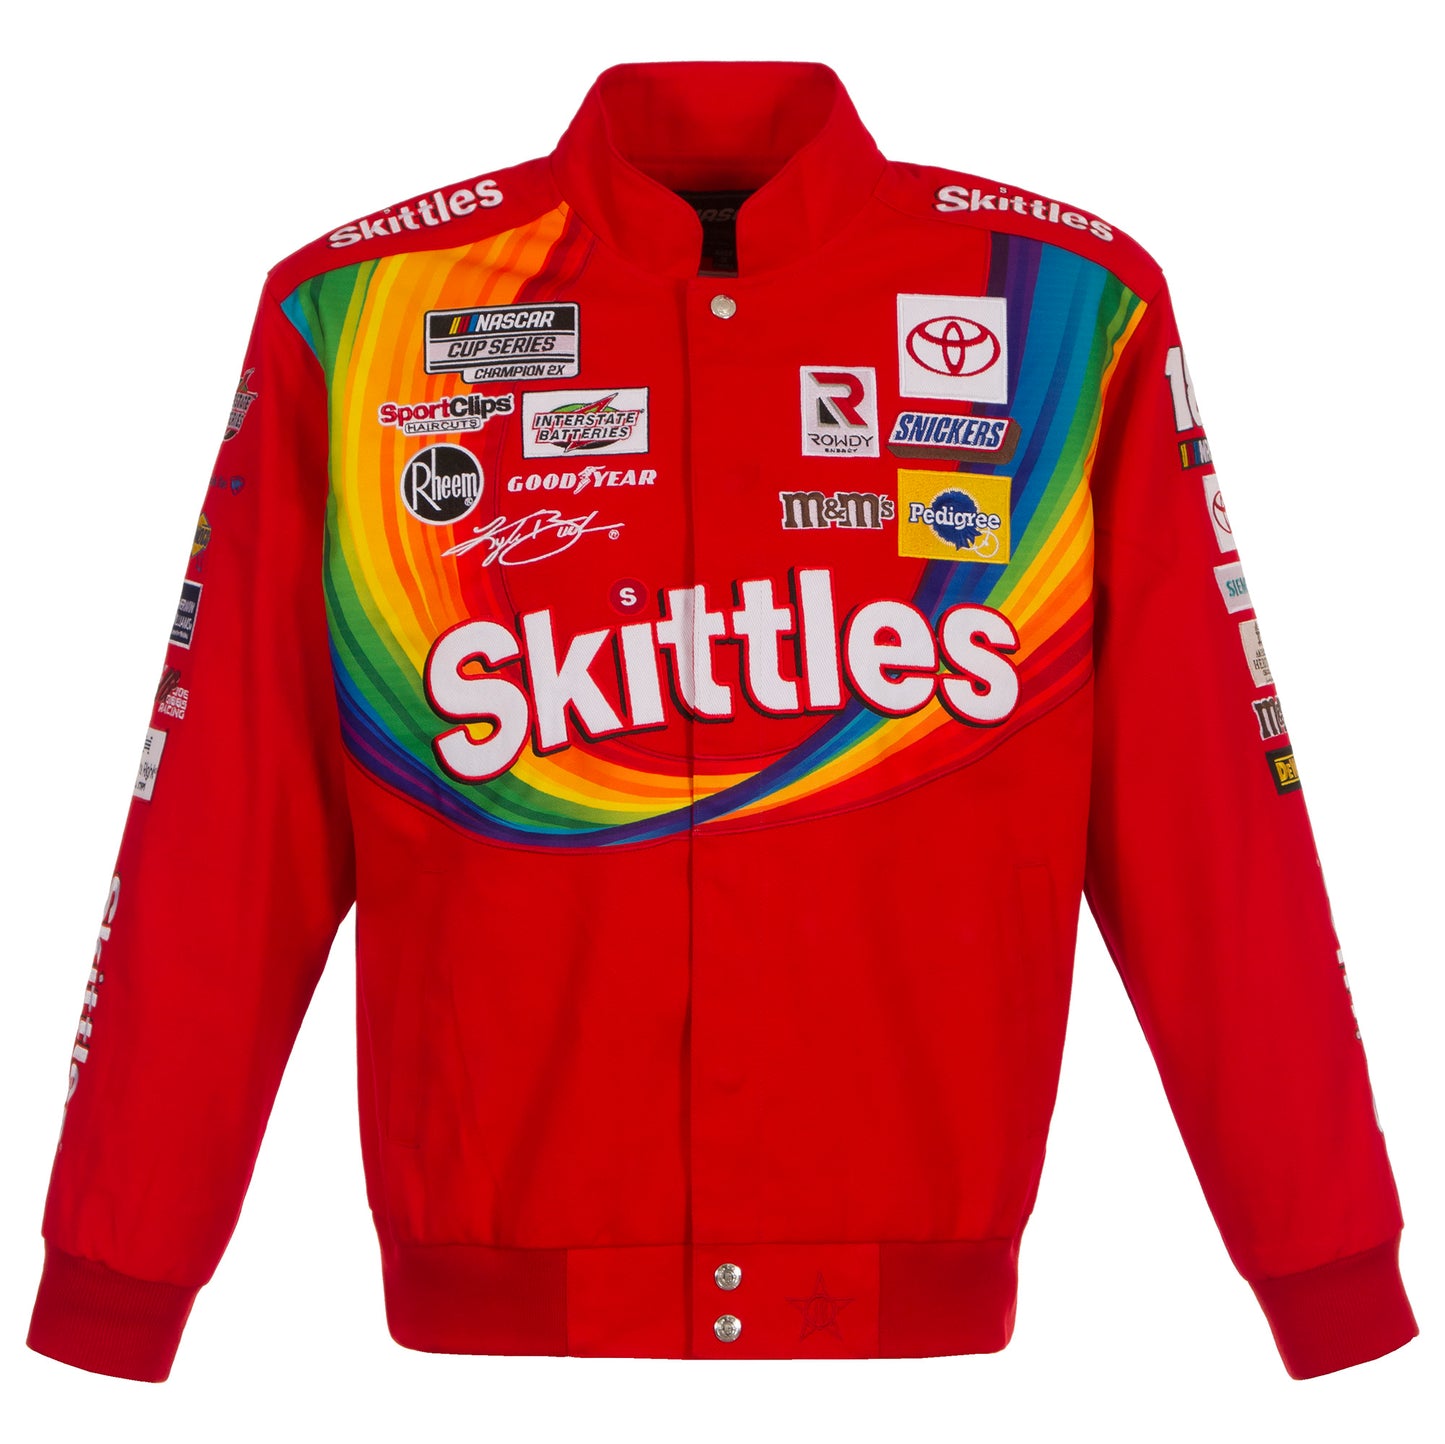 Kyle Busch Skittles NASCAR Twill Jacket